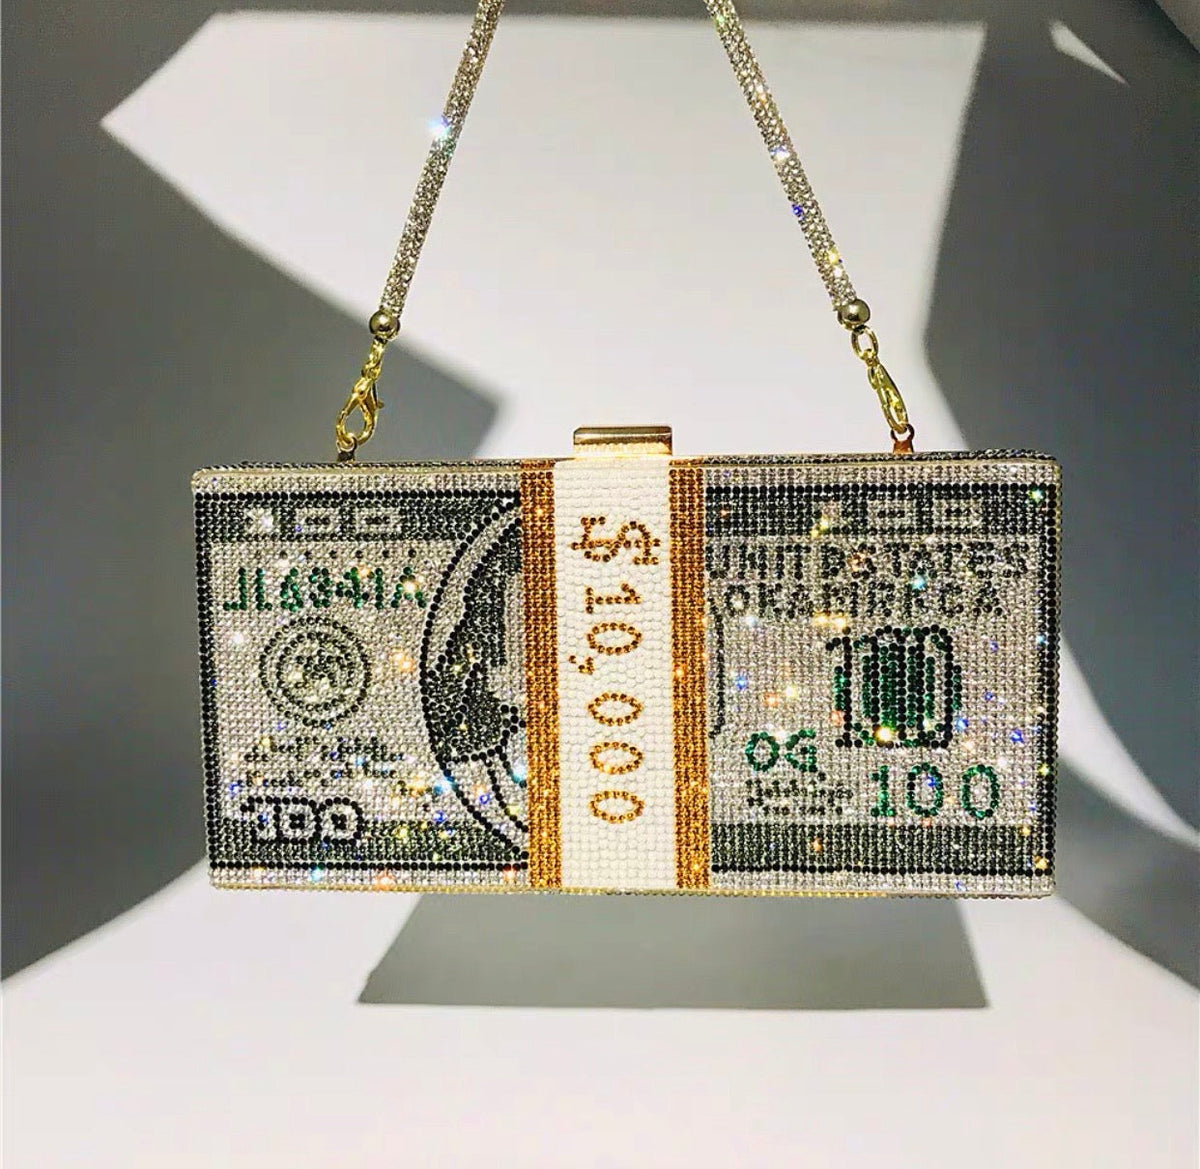 Shiny Dollar bag